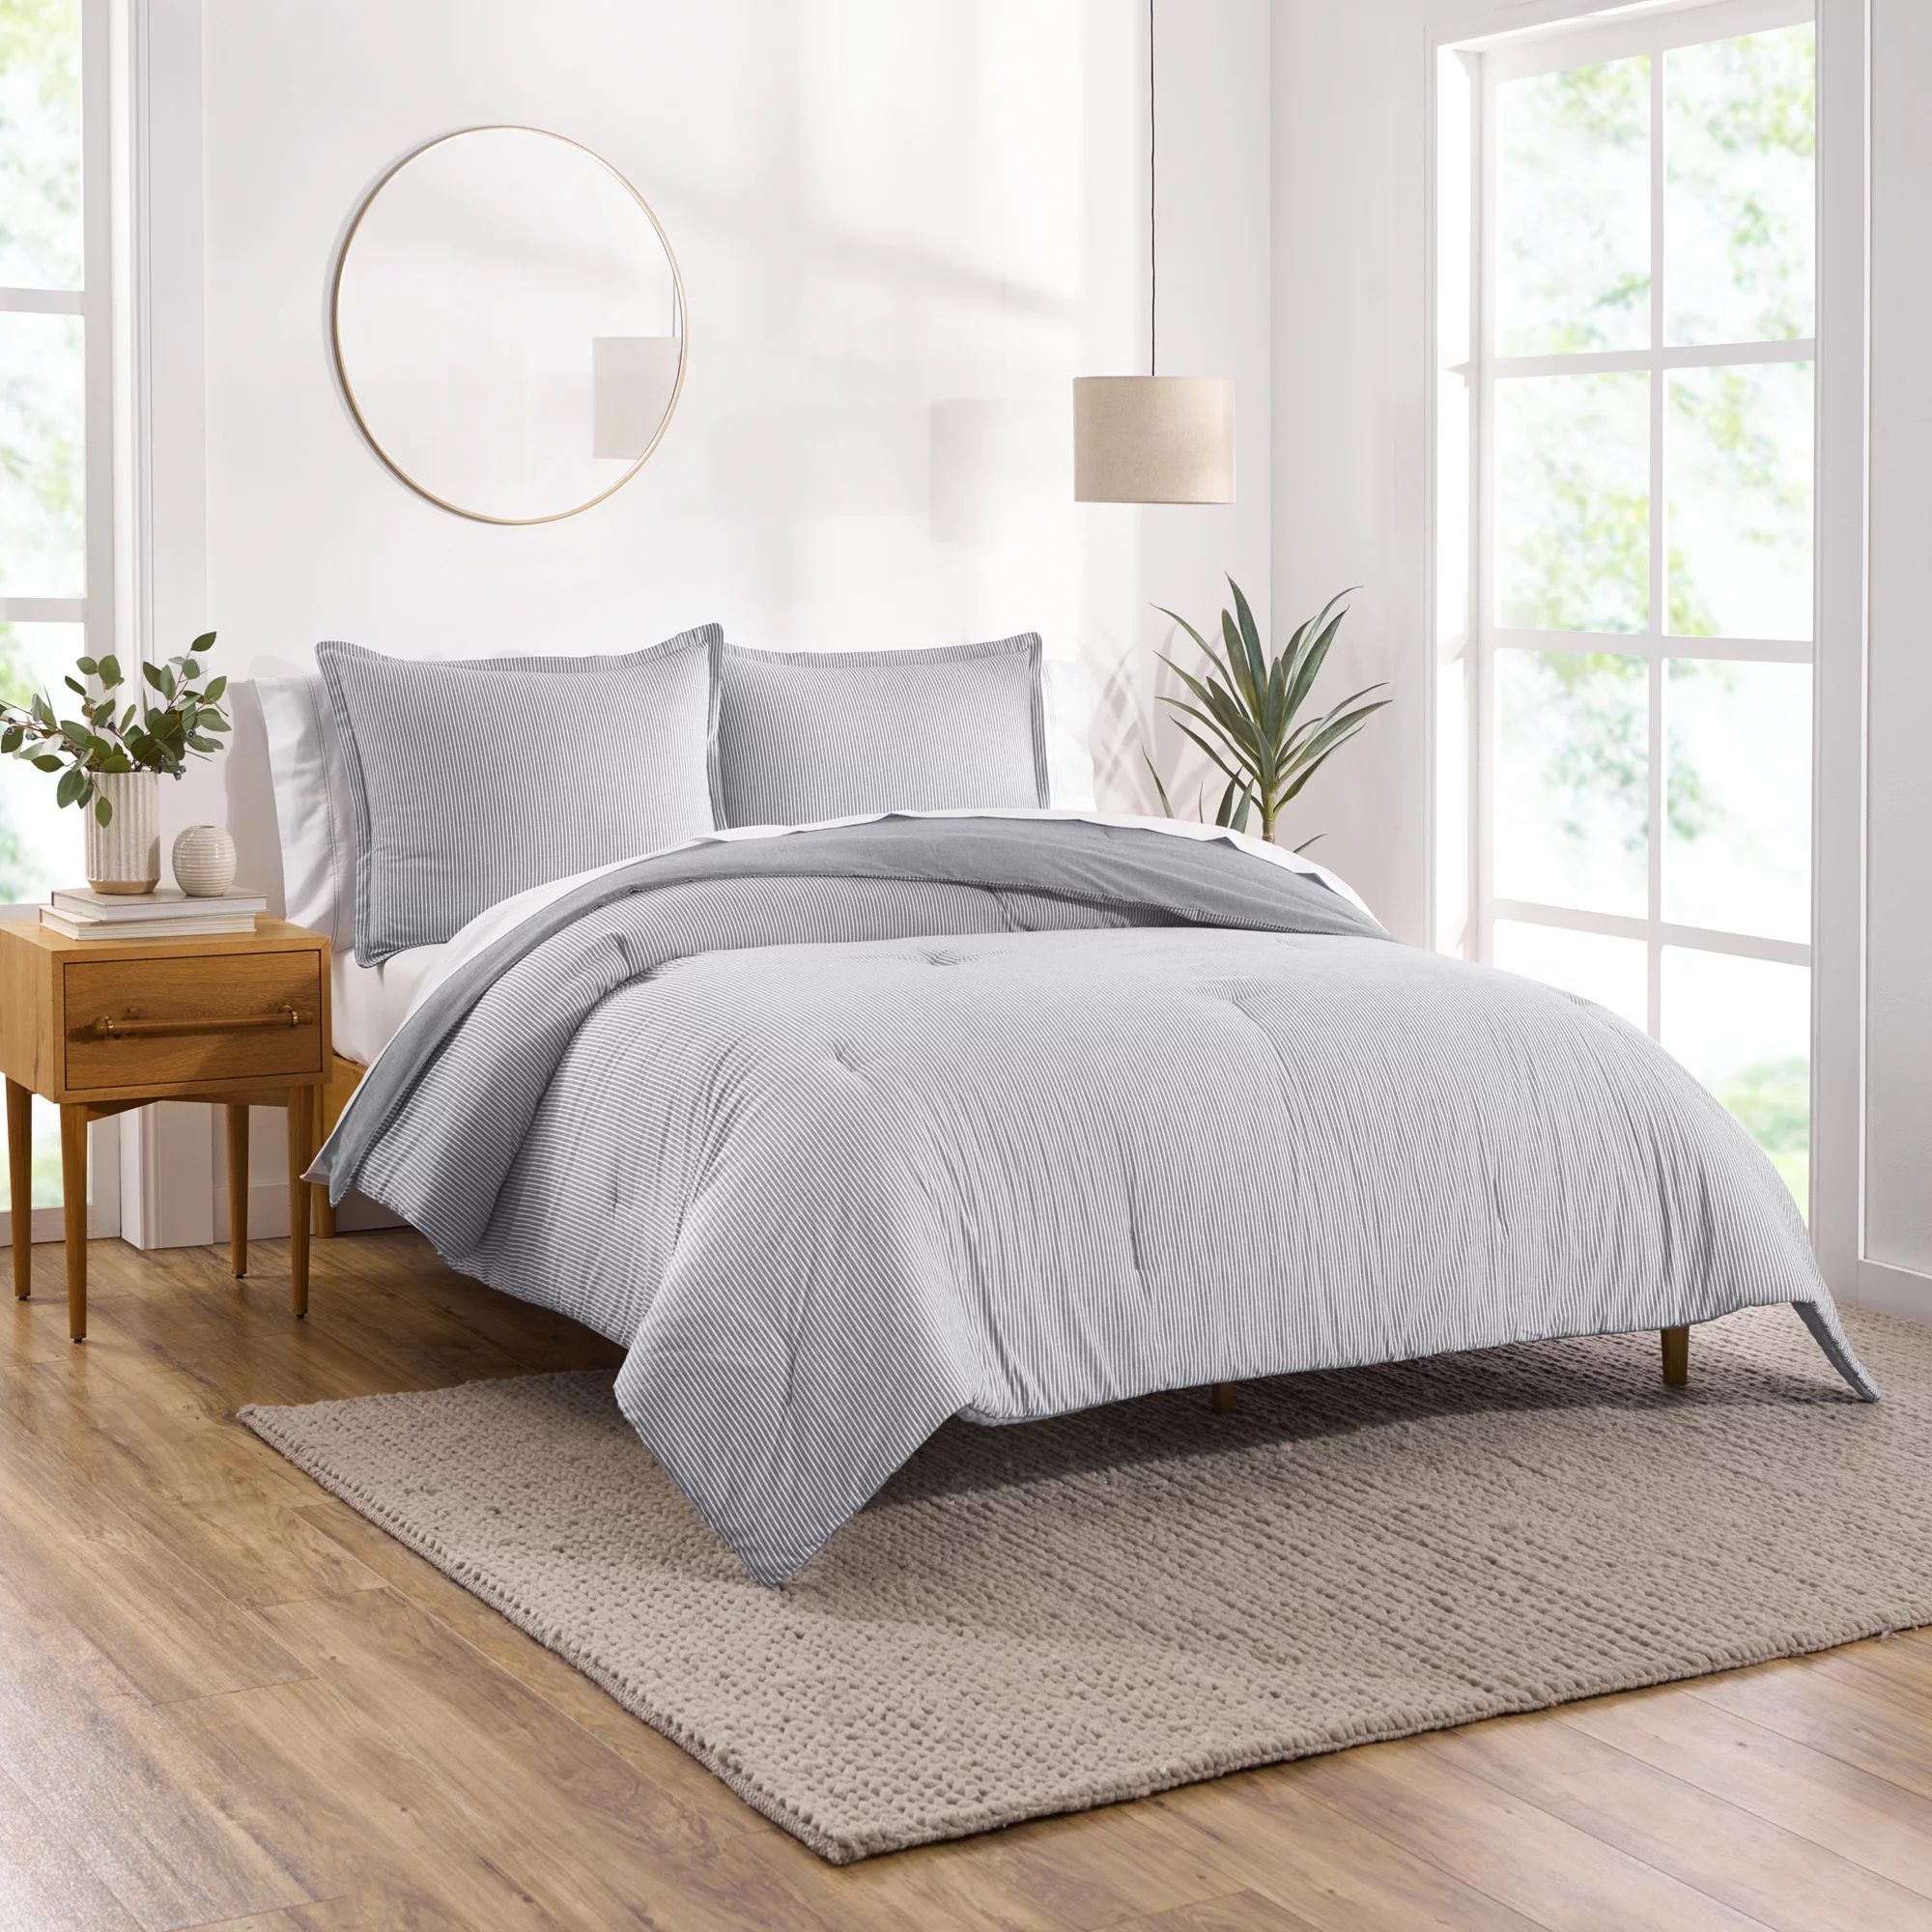 Gap Home Yarn Dyed Washed Chambray Stripe Reversible Organic Cotton Comforter Set, King, Grey, 3-... | Walmart (US)